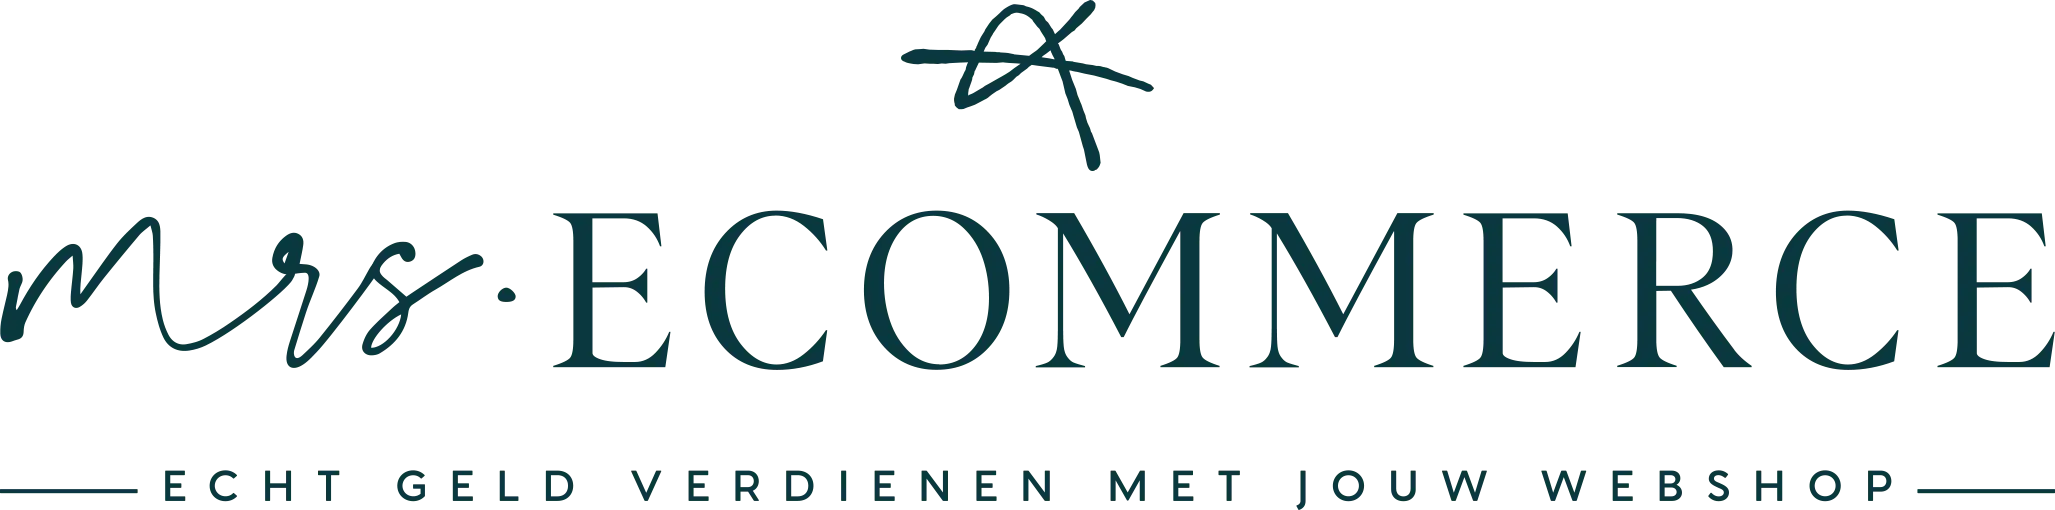 Mrs Ecommerce logo